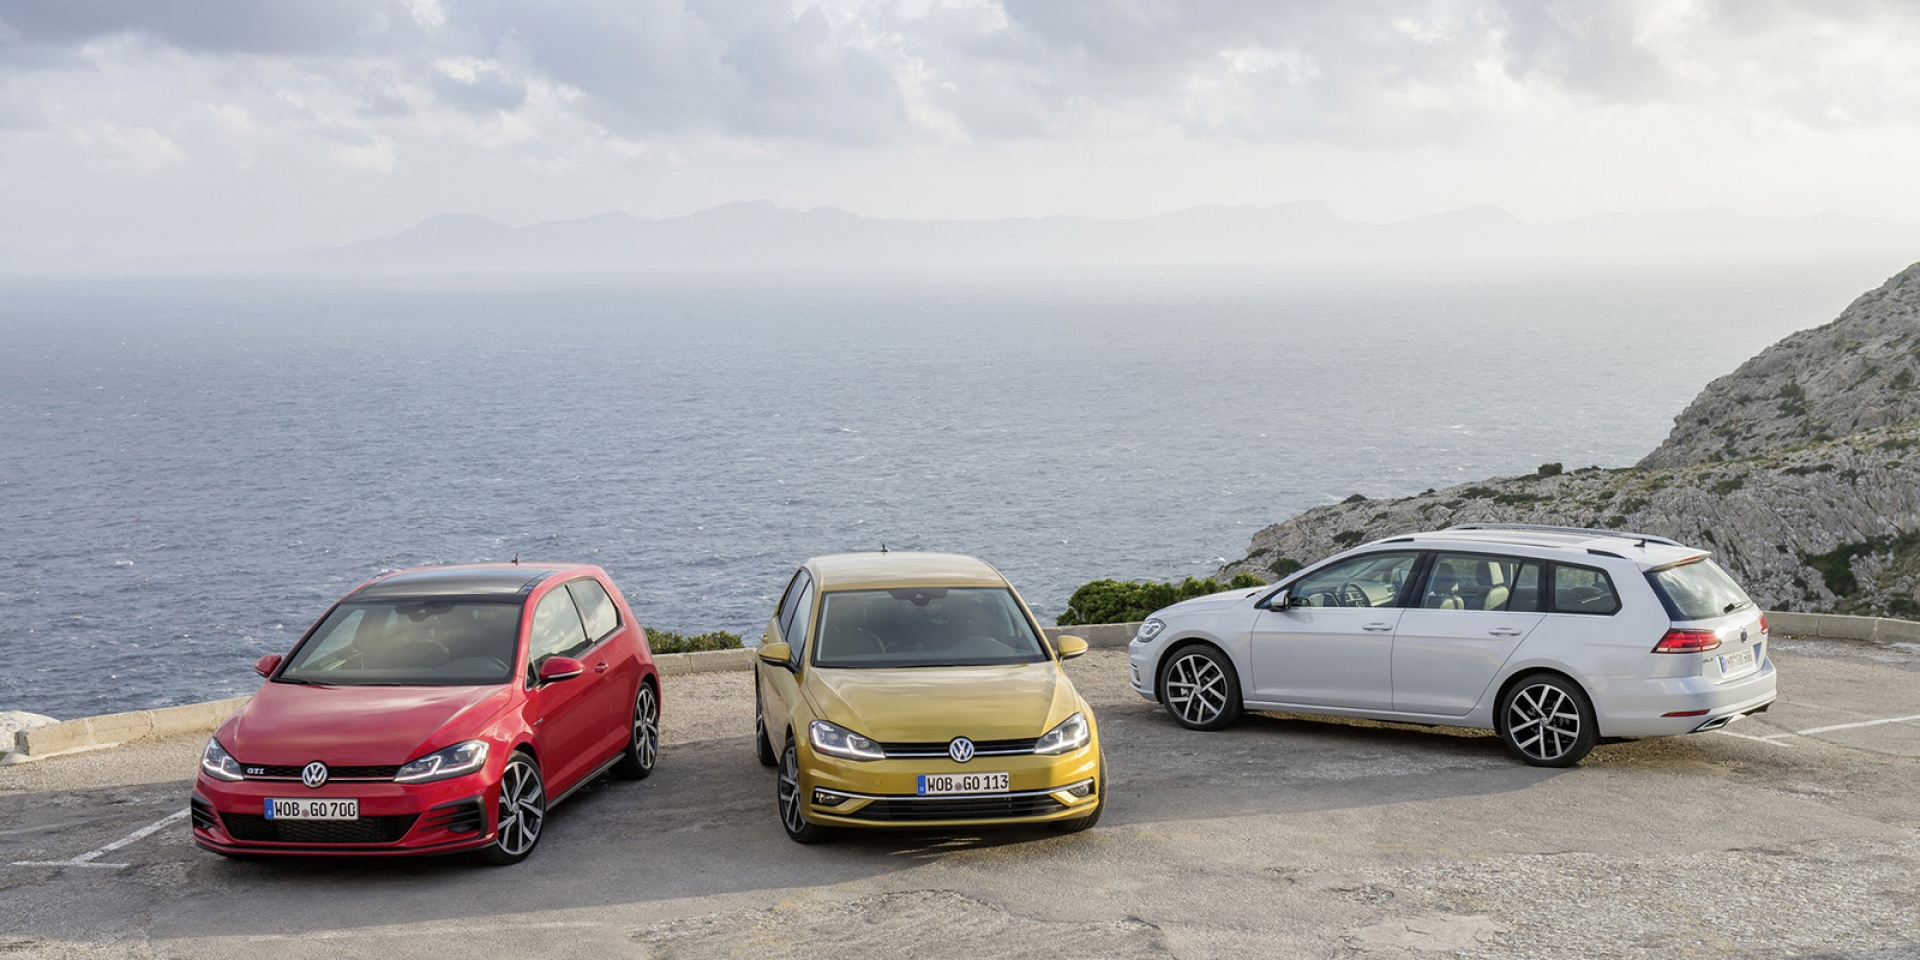 官方新聞稿。Volkswagen IQ.DRIVE智能駕駛輔助系統大獲好評 入主Golf、Touran、Tiguan享優購專案